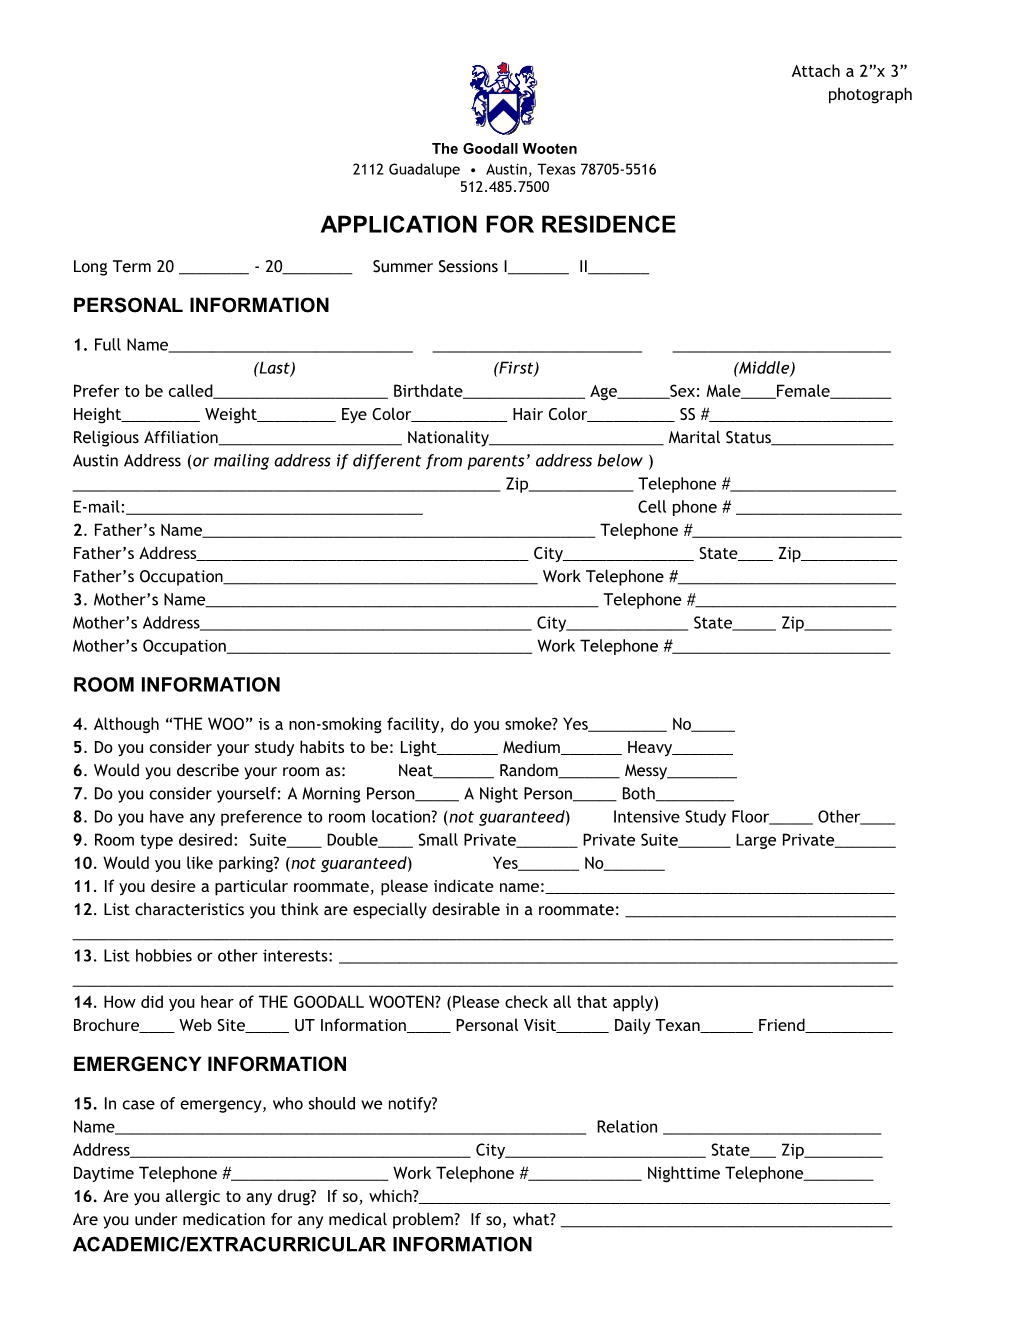 Application for Residence